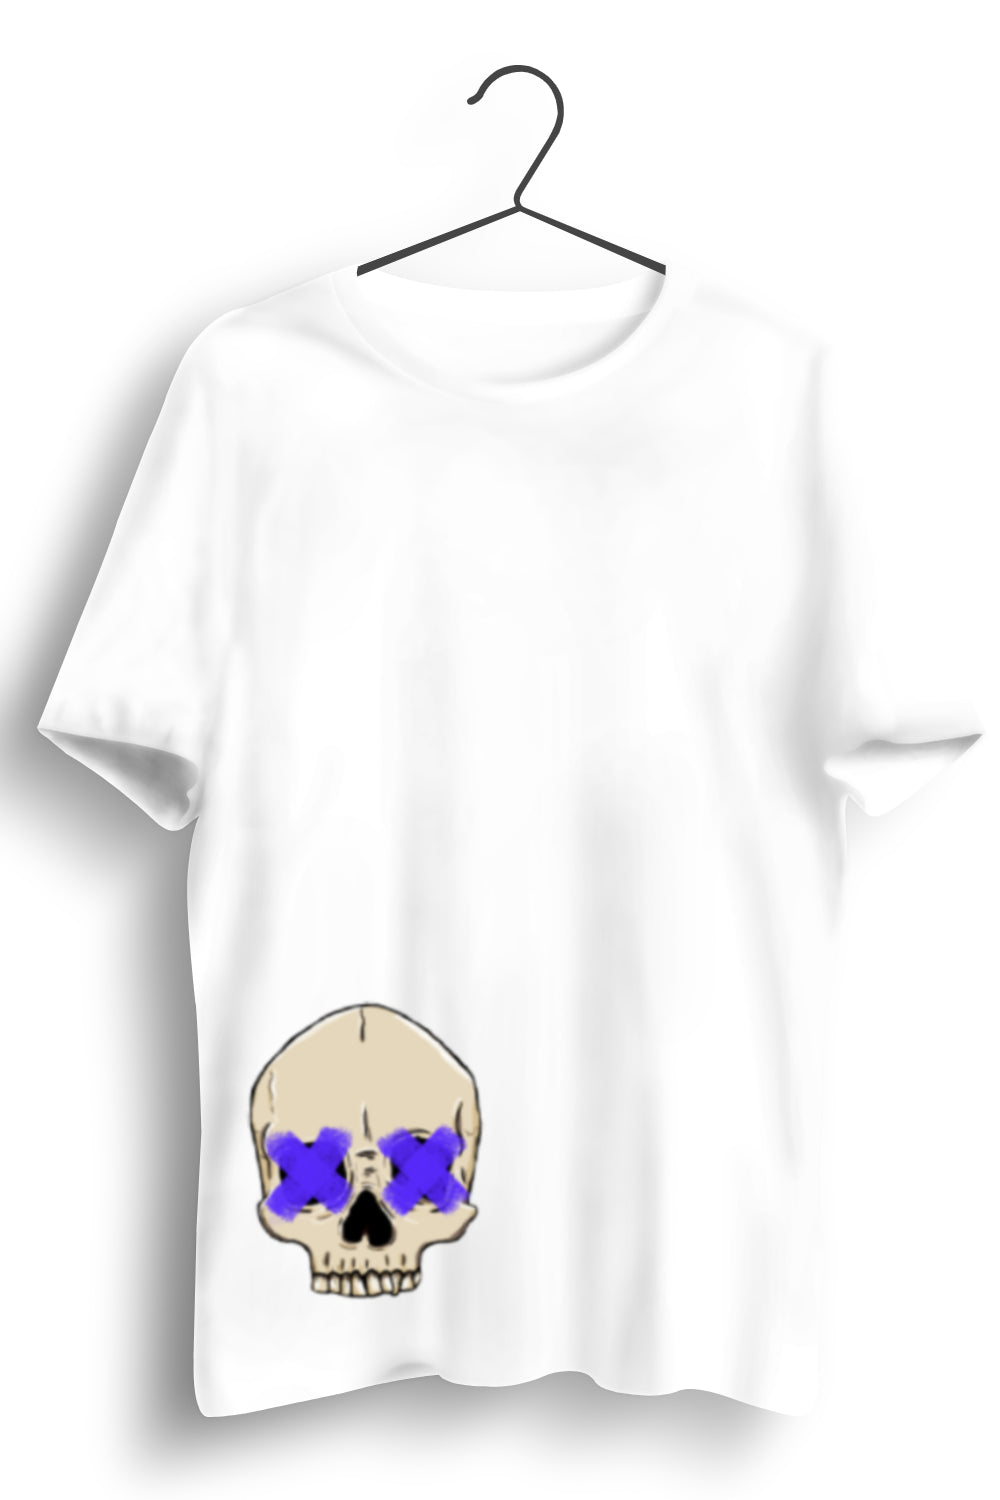 Punk Skull Graphic Printed White Tshirt